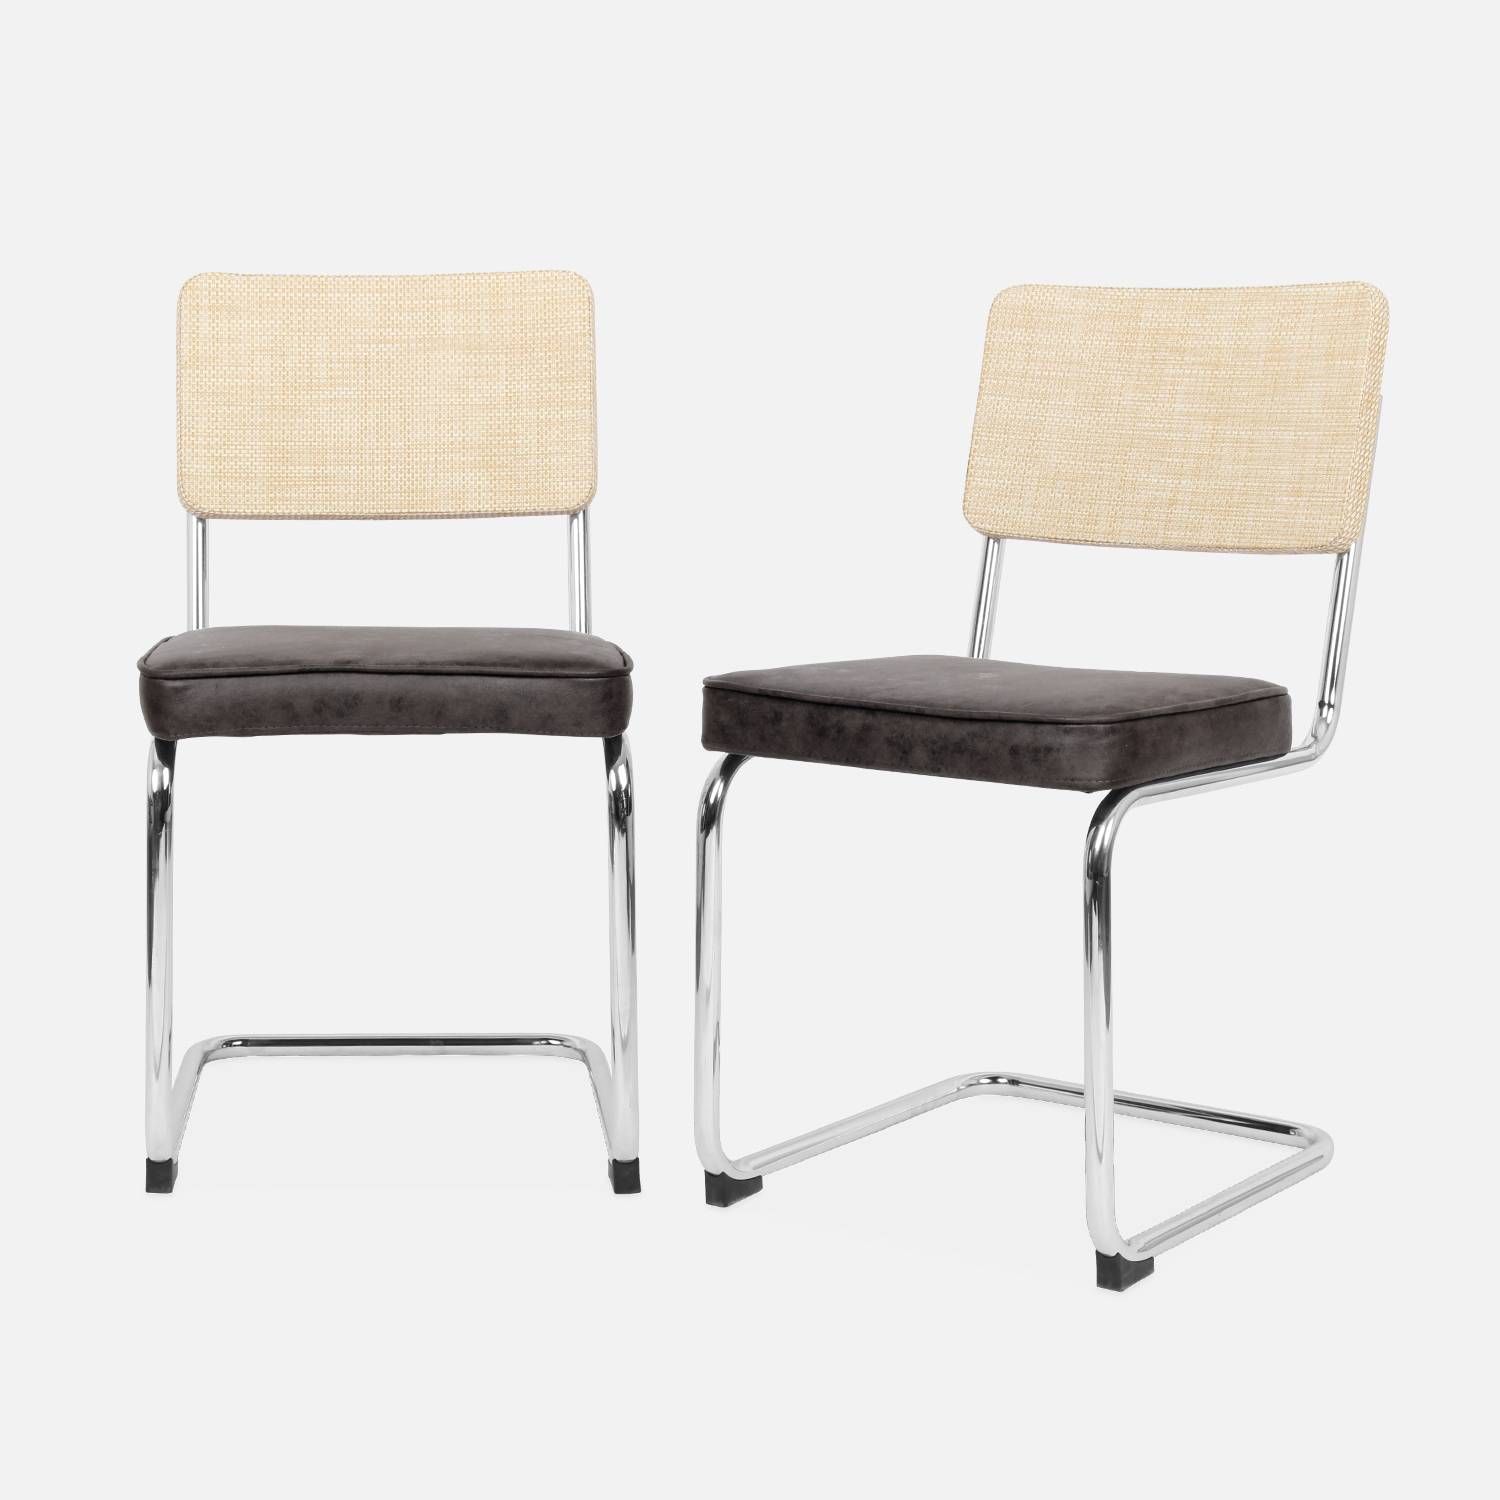 2 sillas cantilever, tela marrón oscuro y resina  | sweeek